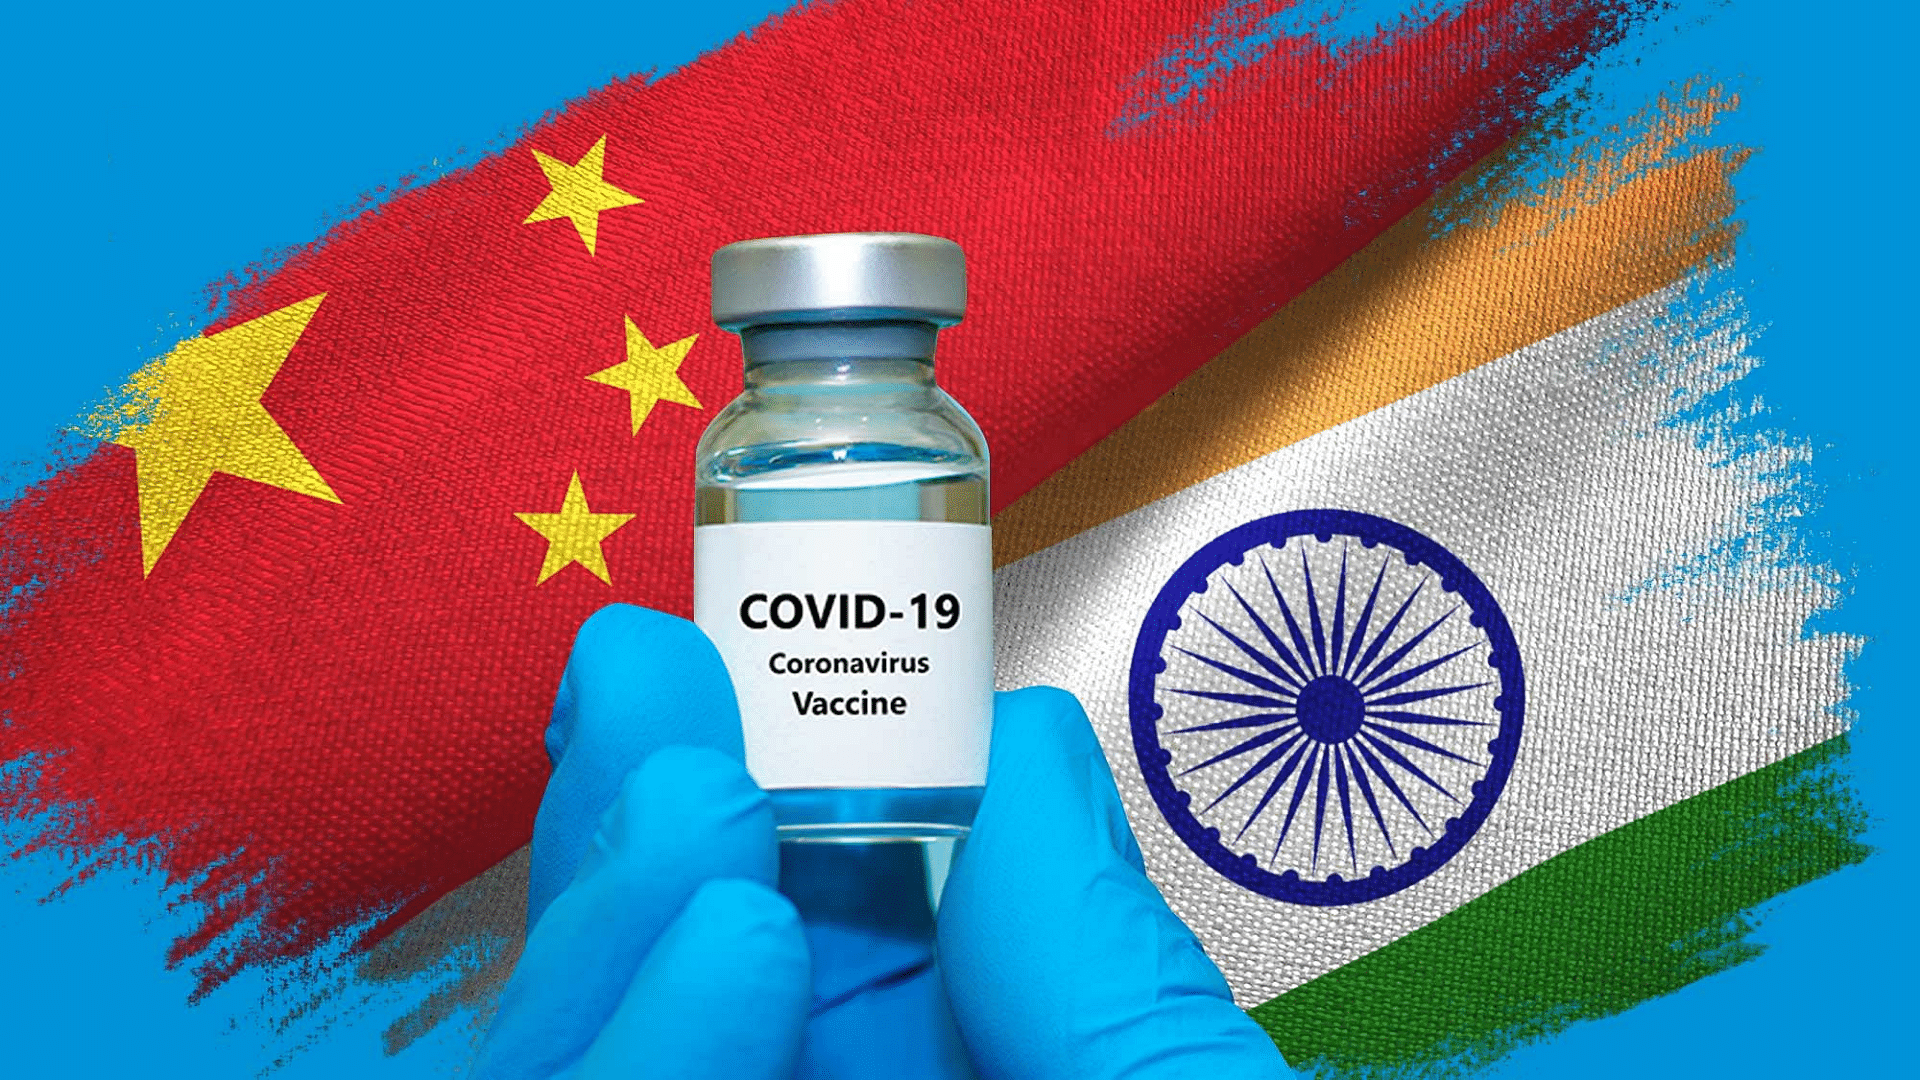 भारत को अब चीनी कोरोना वैक्सीन अपना लेनी चाहिए?&nbsp;